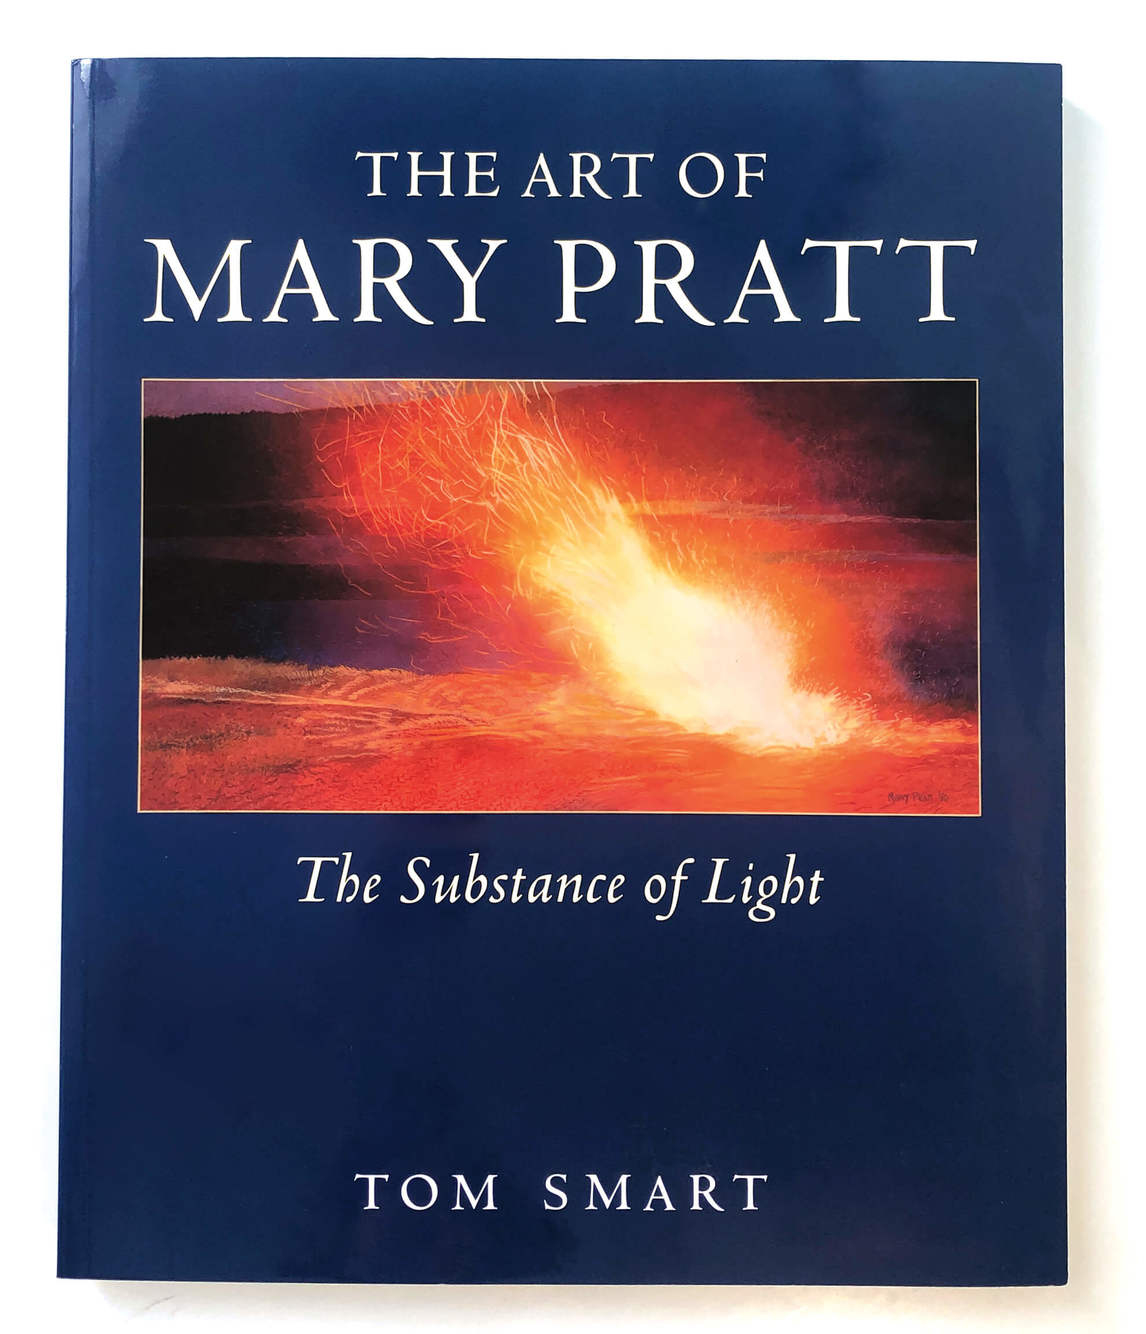 Couverture de The Art of Mary Pratt: The Substance of Light de Tom Smart